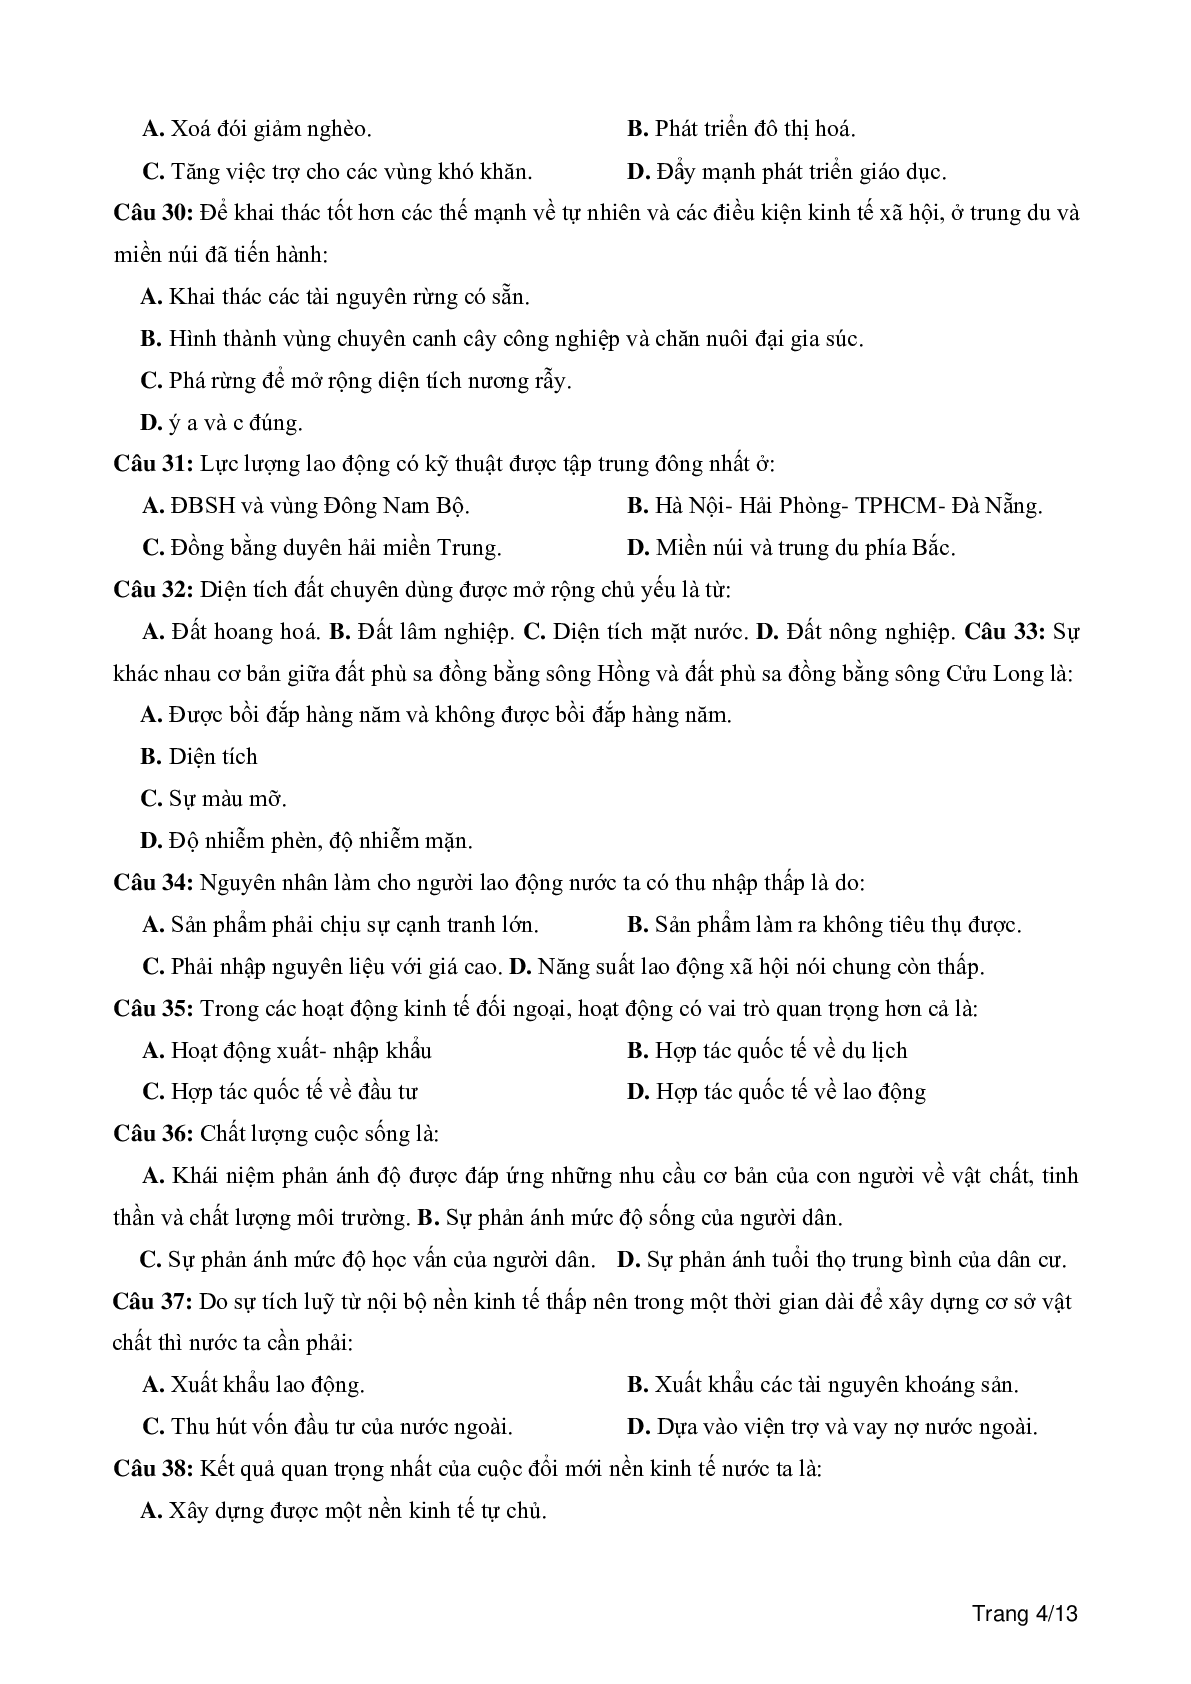 100 câu trắc nghiệm khách quan môn Địa lí lớp 12 (trang 4)